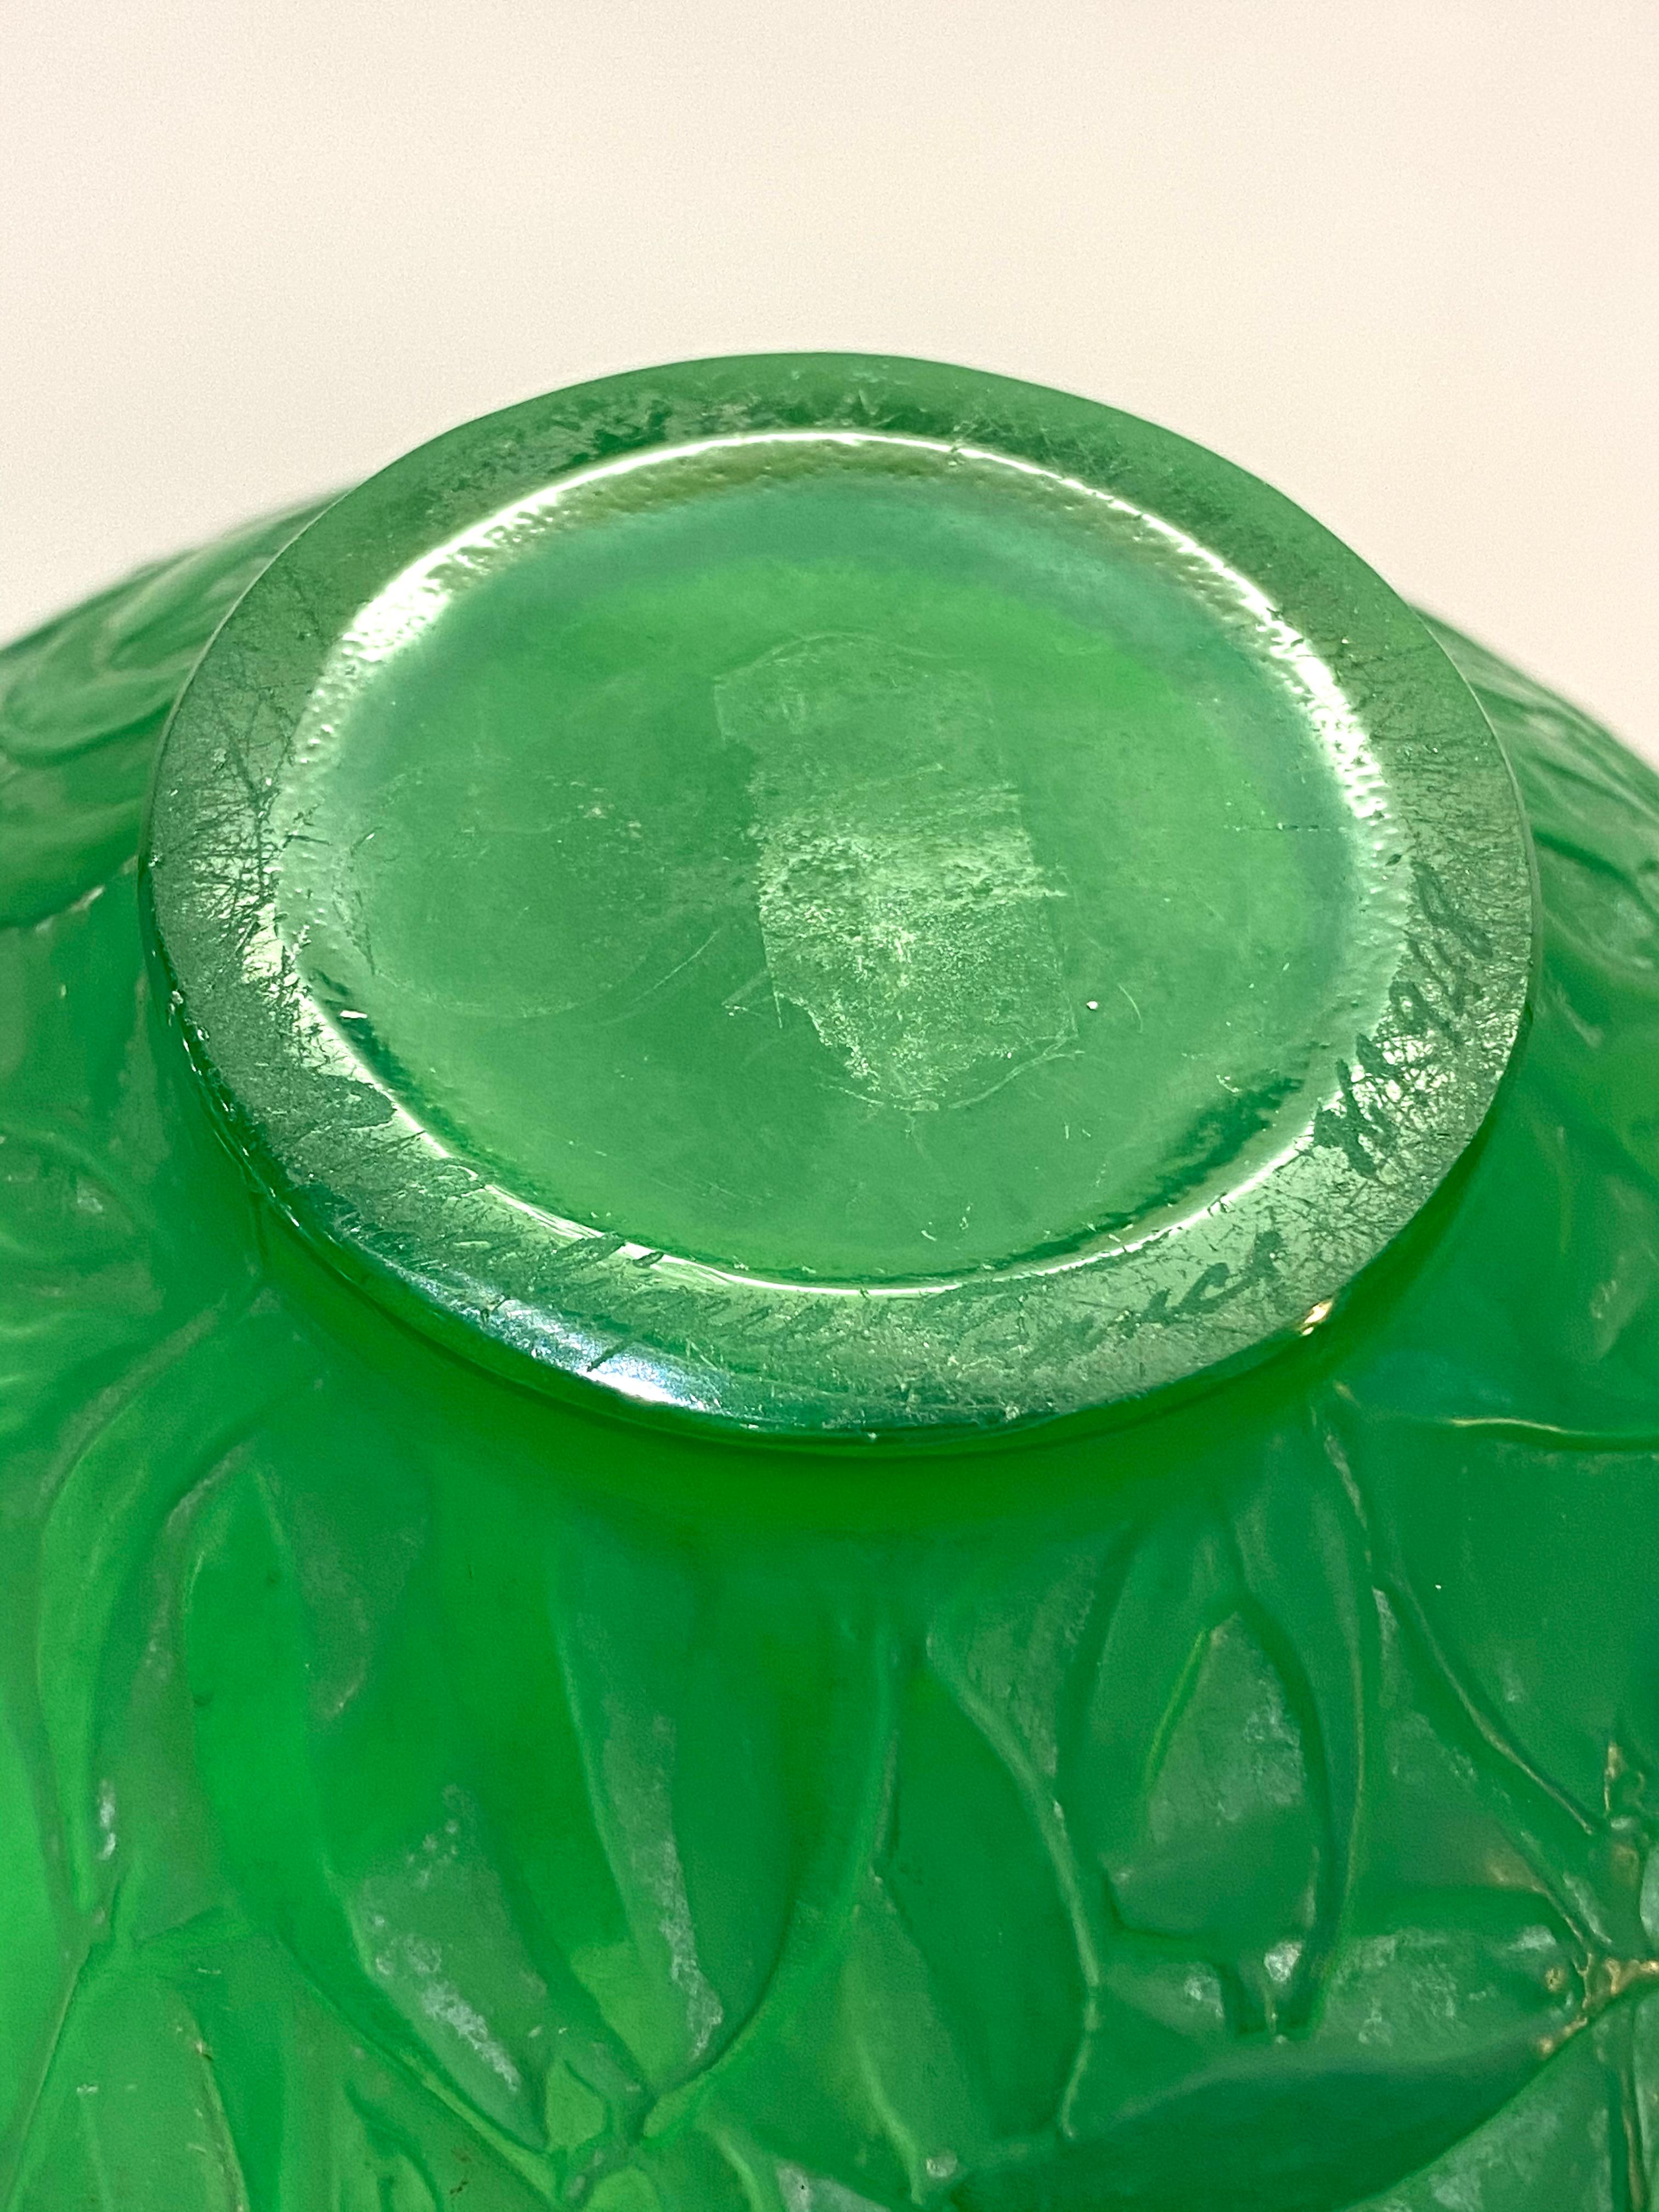 French 1920 René Lalique Gui Vase in Triple Cased Jade Green Glass Mistletoe